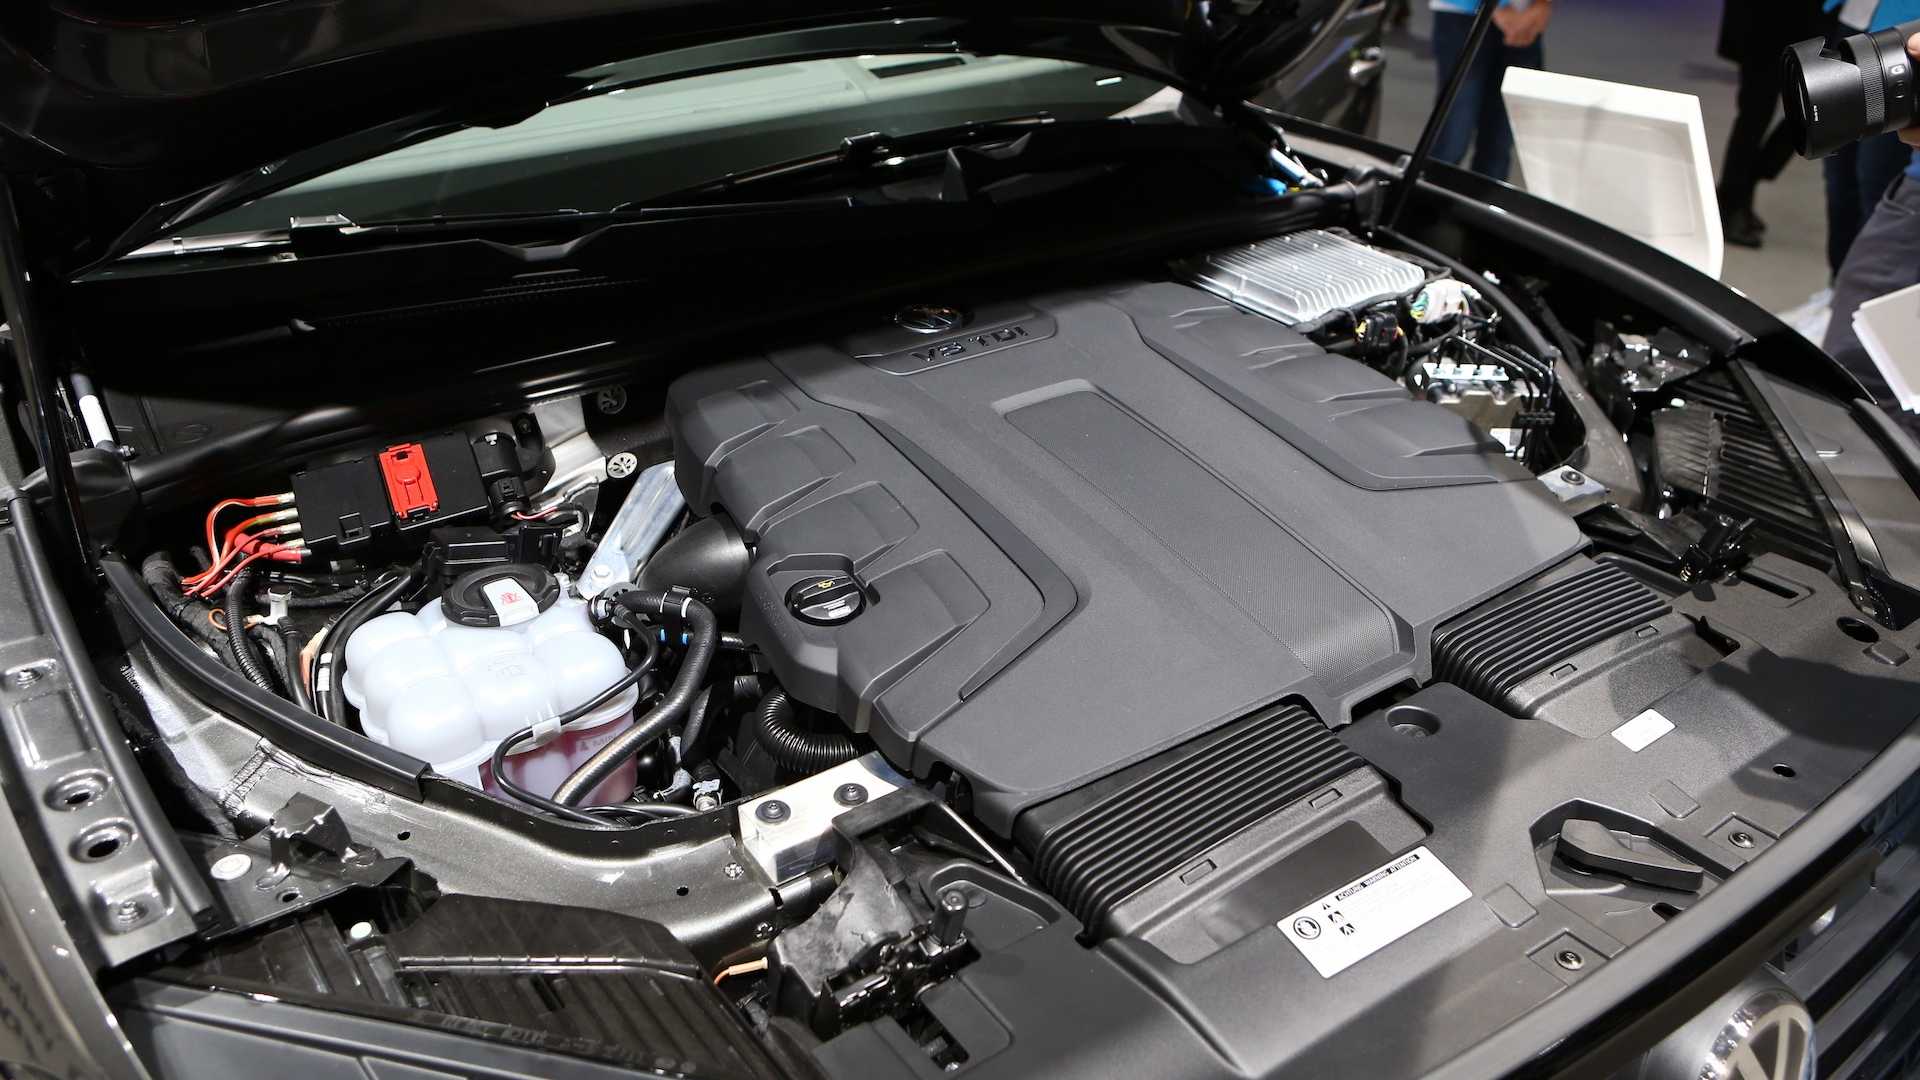 VolkswagenTouareg V8 TDI mới, máy dầu V8 có mô-men xoắn lên tới 900Nm - 04